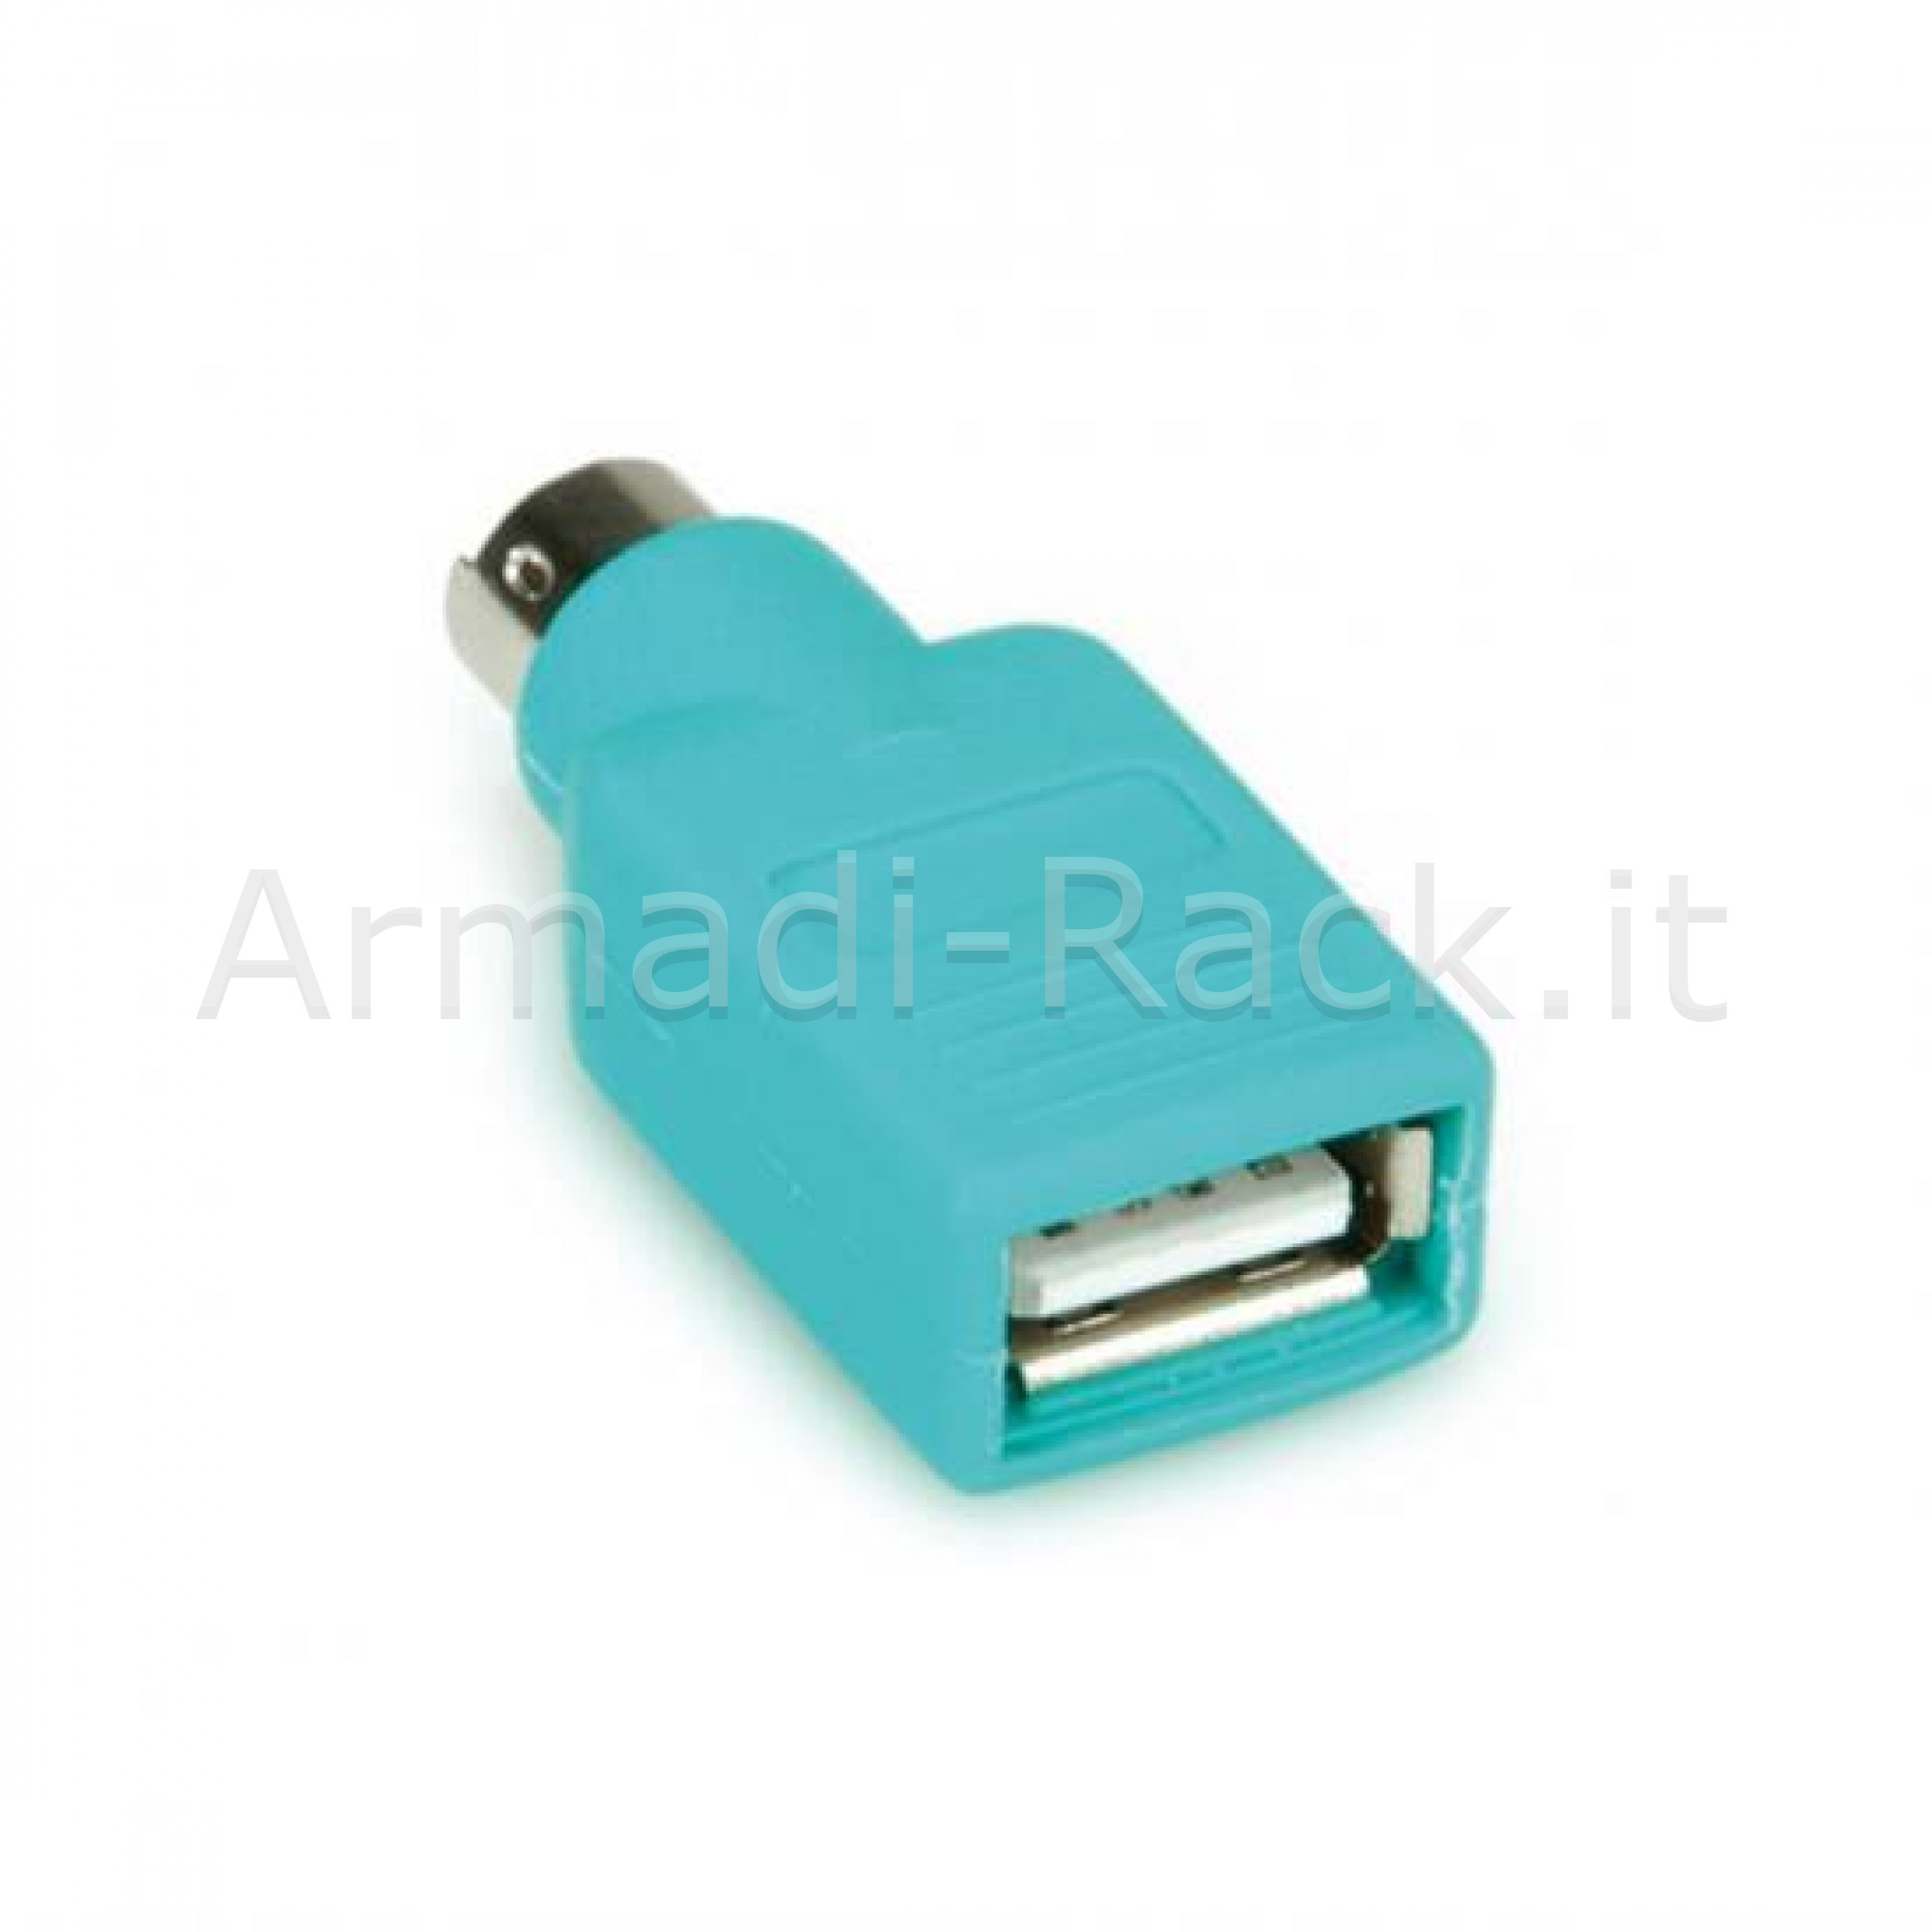 InLine USB Adattatore ps/2 A maschio a presa ps/2 